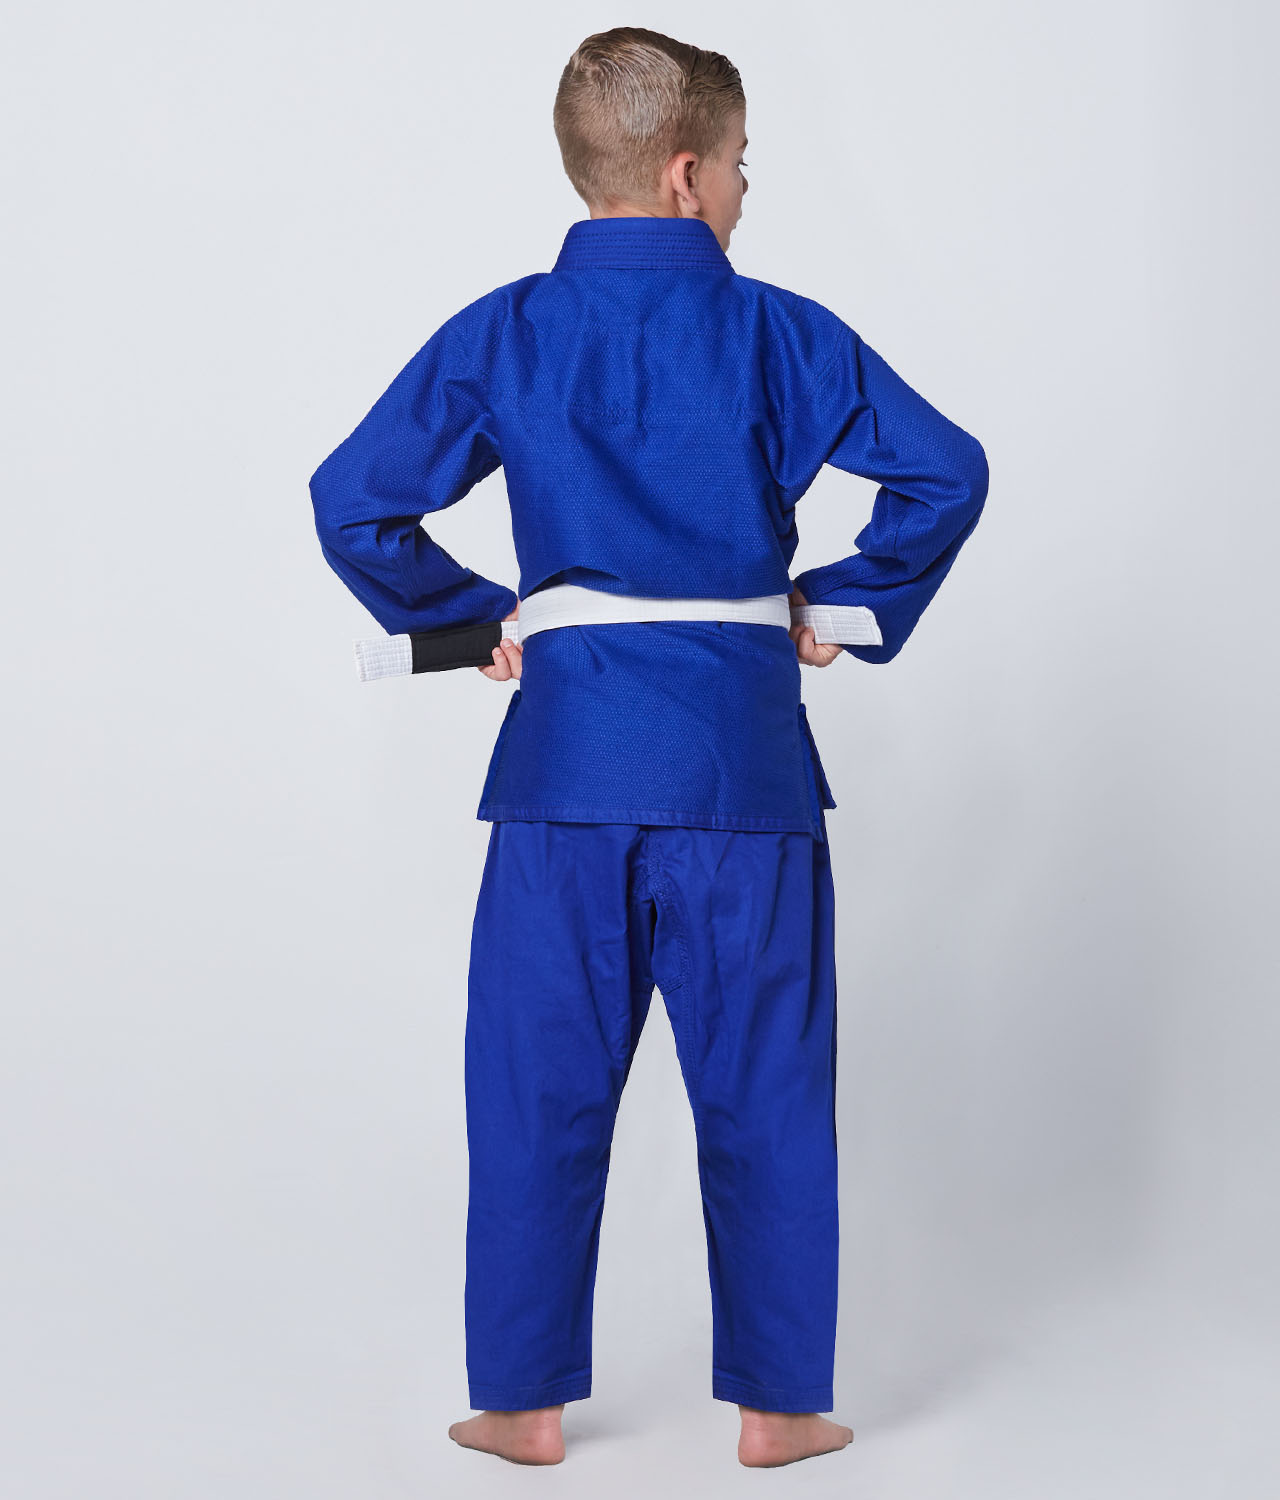 Elite Sports Kids' Essential Blue Brazilian Jiu Jitsu BJJ Gi Back View